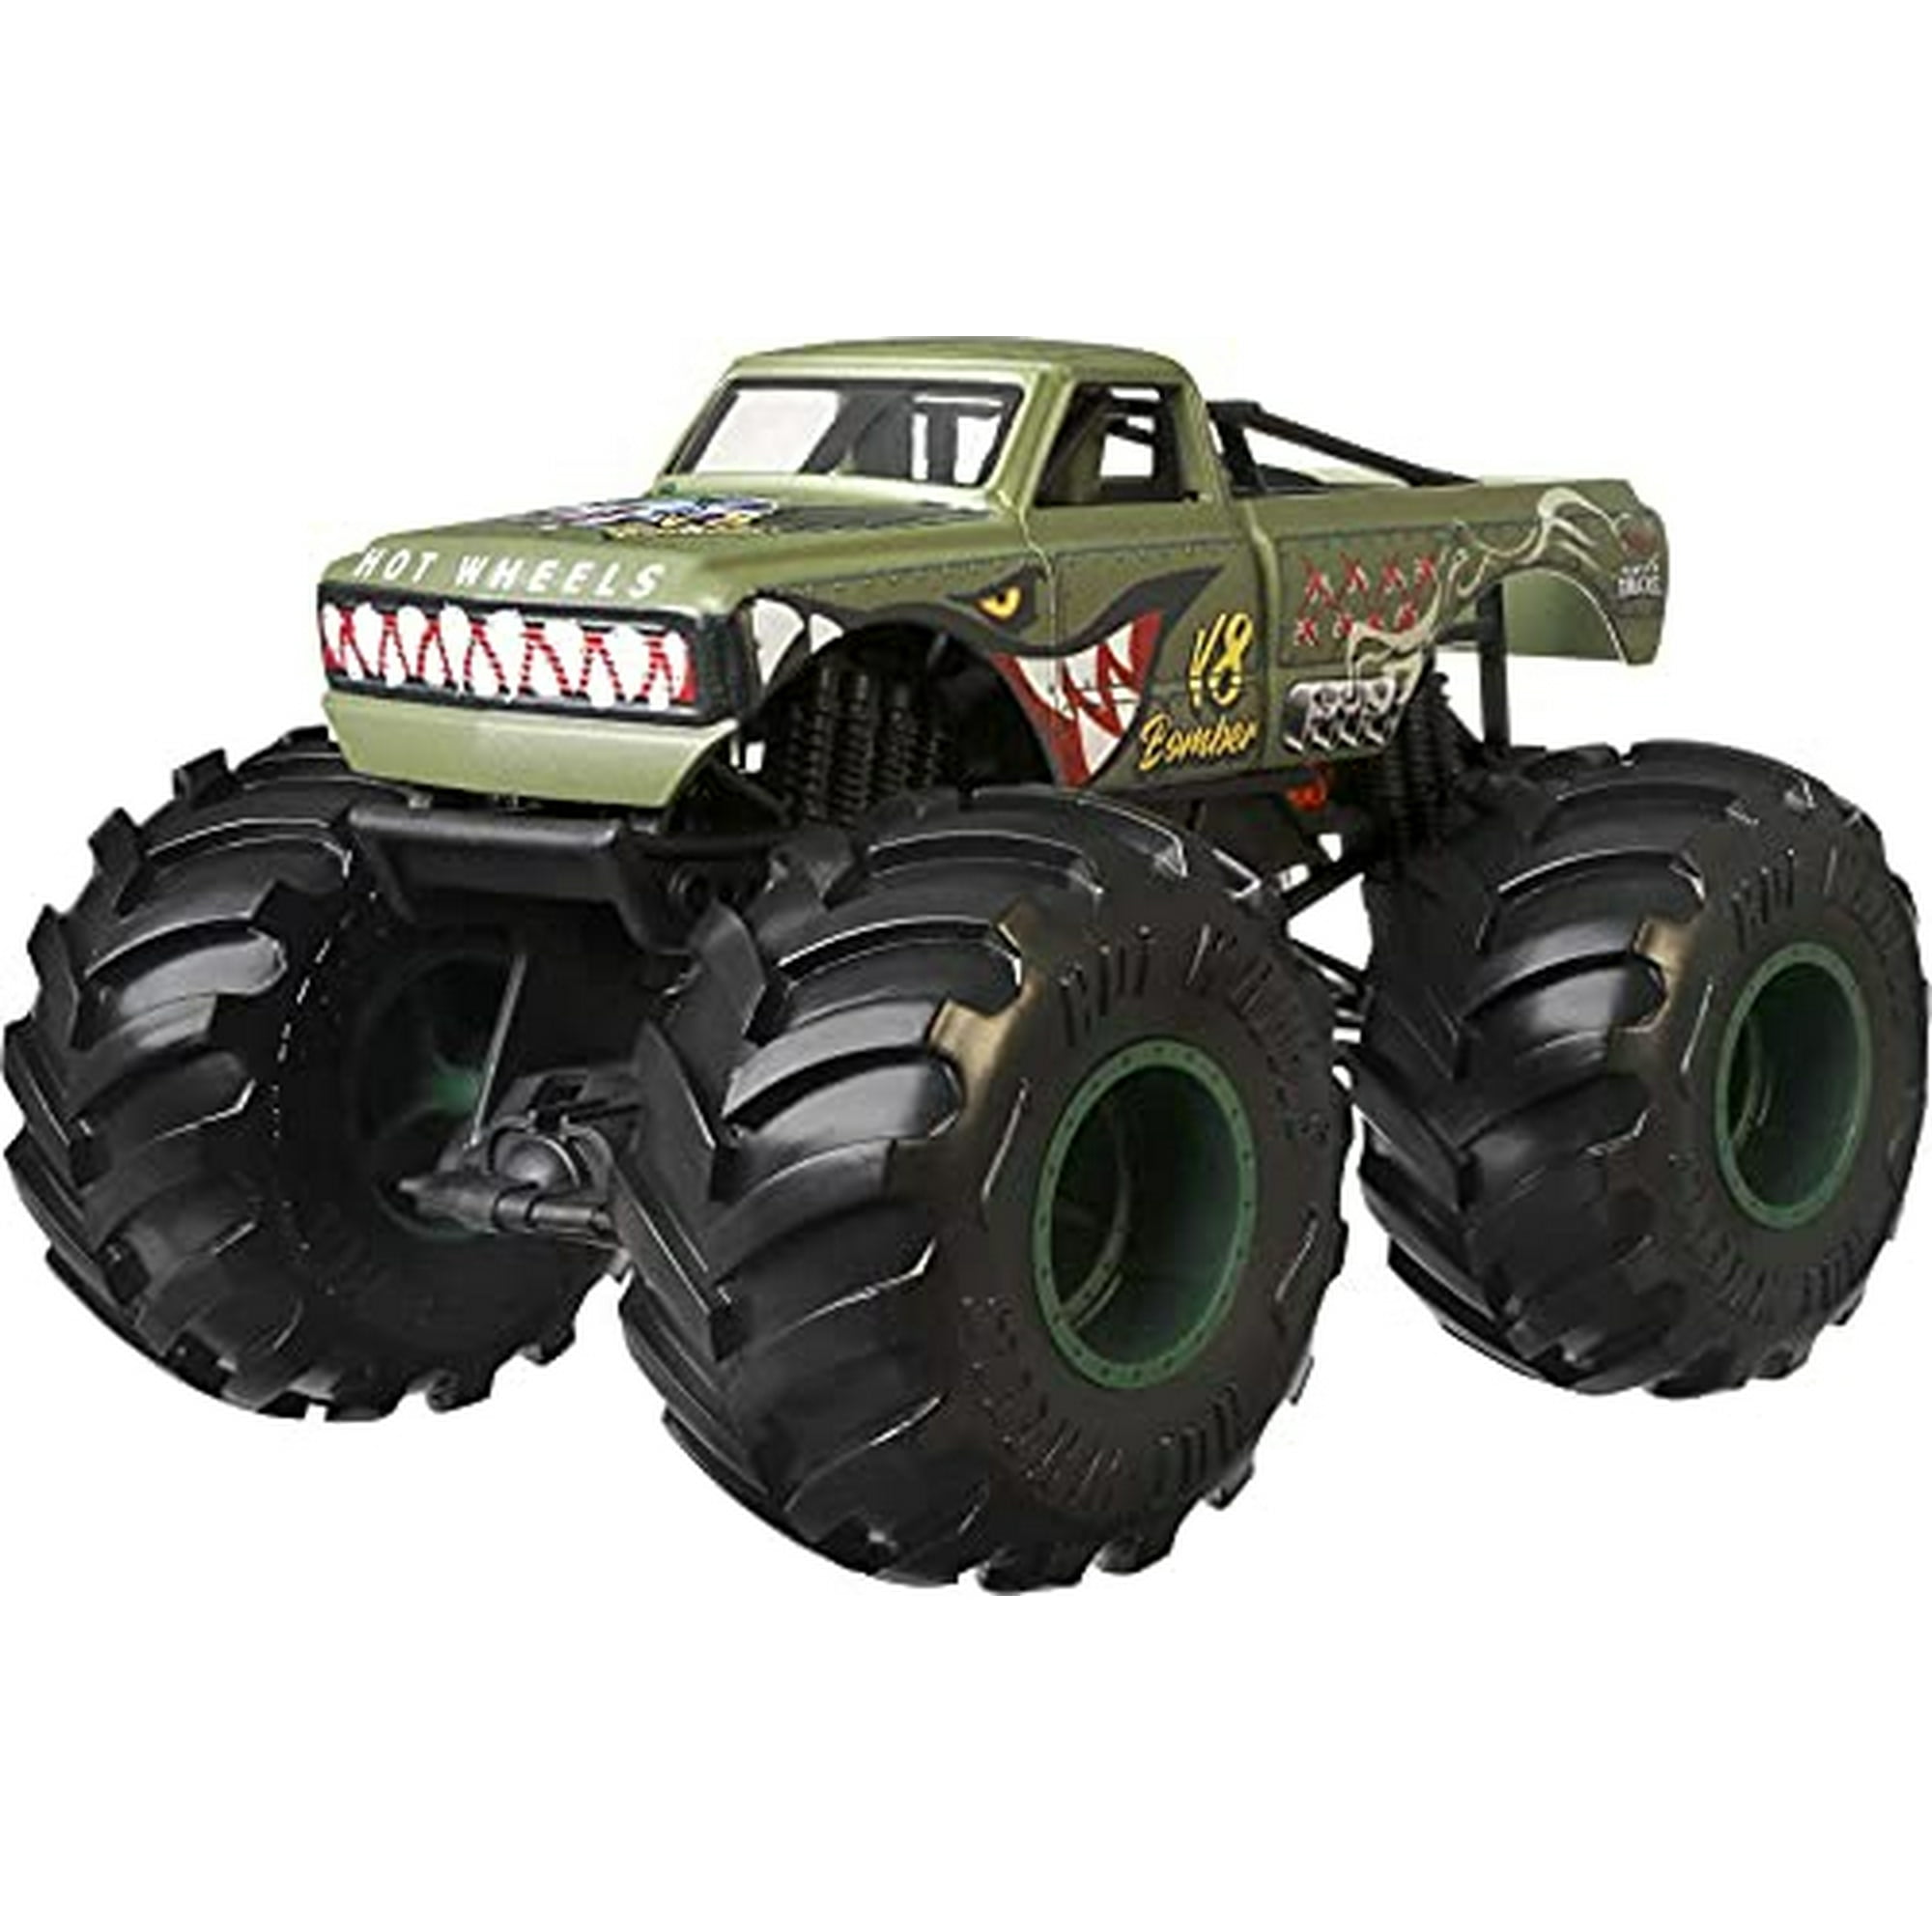 Hot Wheels Juego de 20 autos y camiones de juguete a escala 1:64, vehículos  coleccionables (los estilos pueden variar)